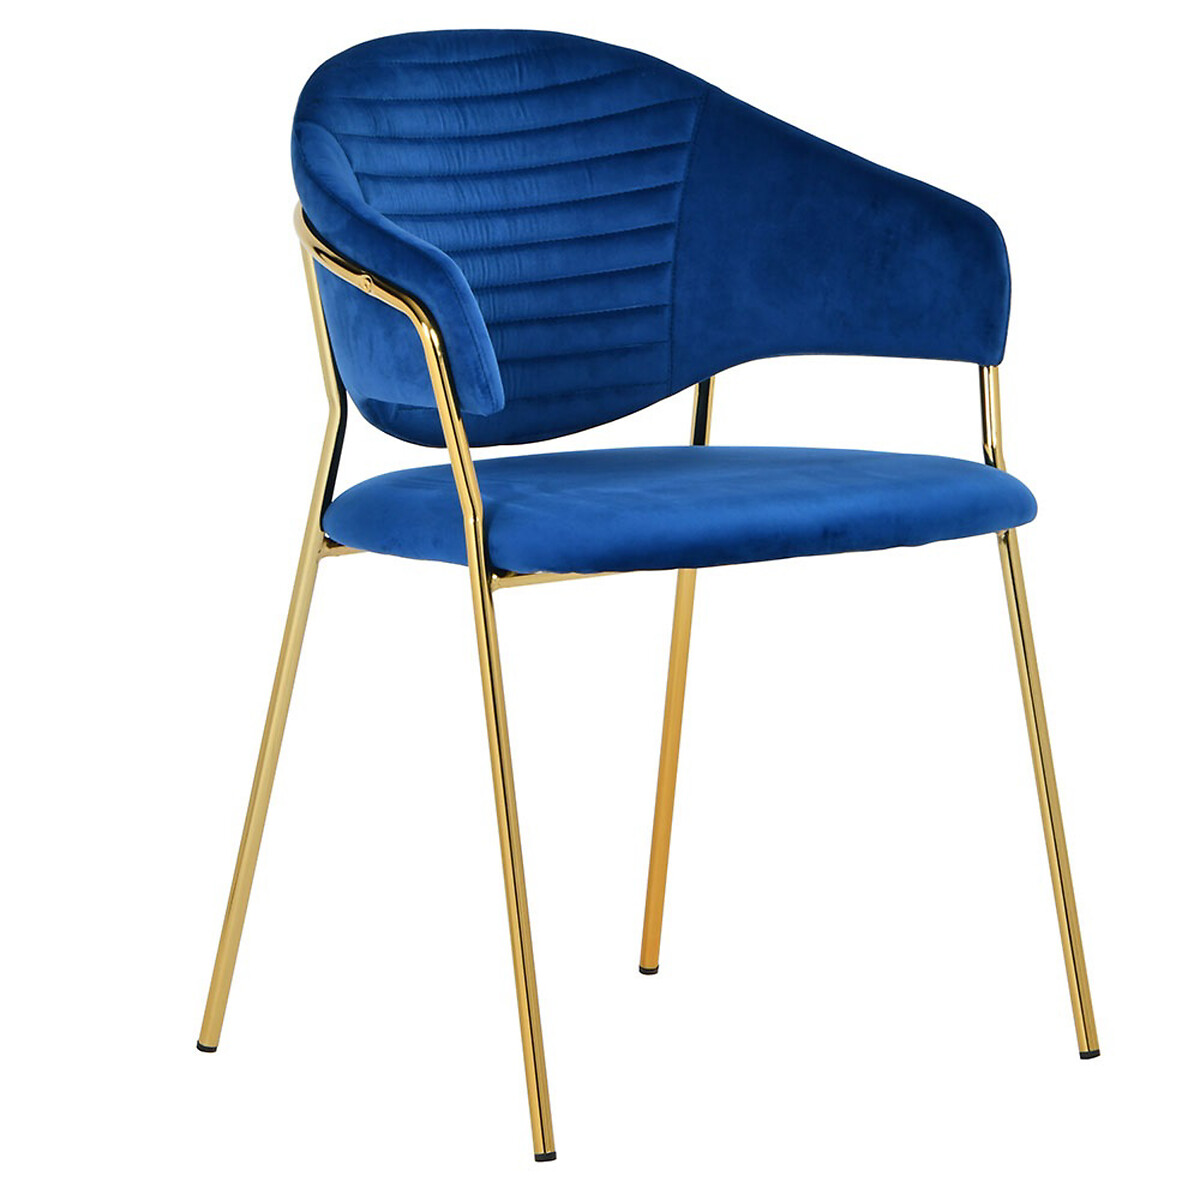 Стул Avatar единый размер синий стул с фланелевым покрытием tibby единый размер синий